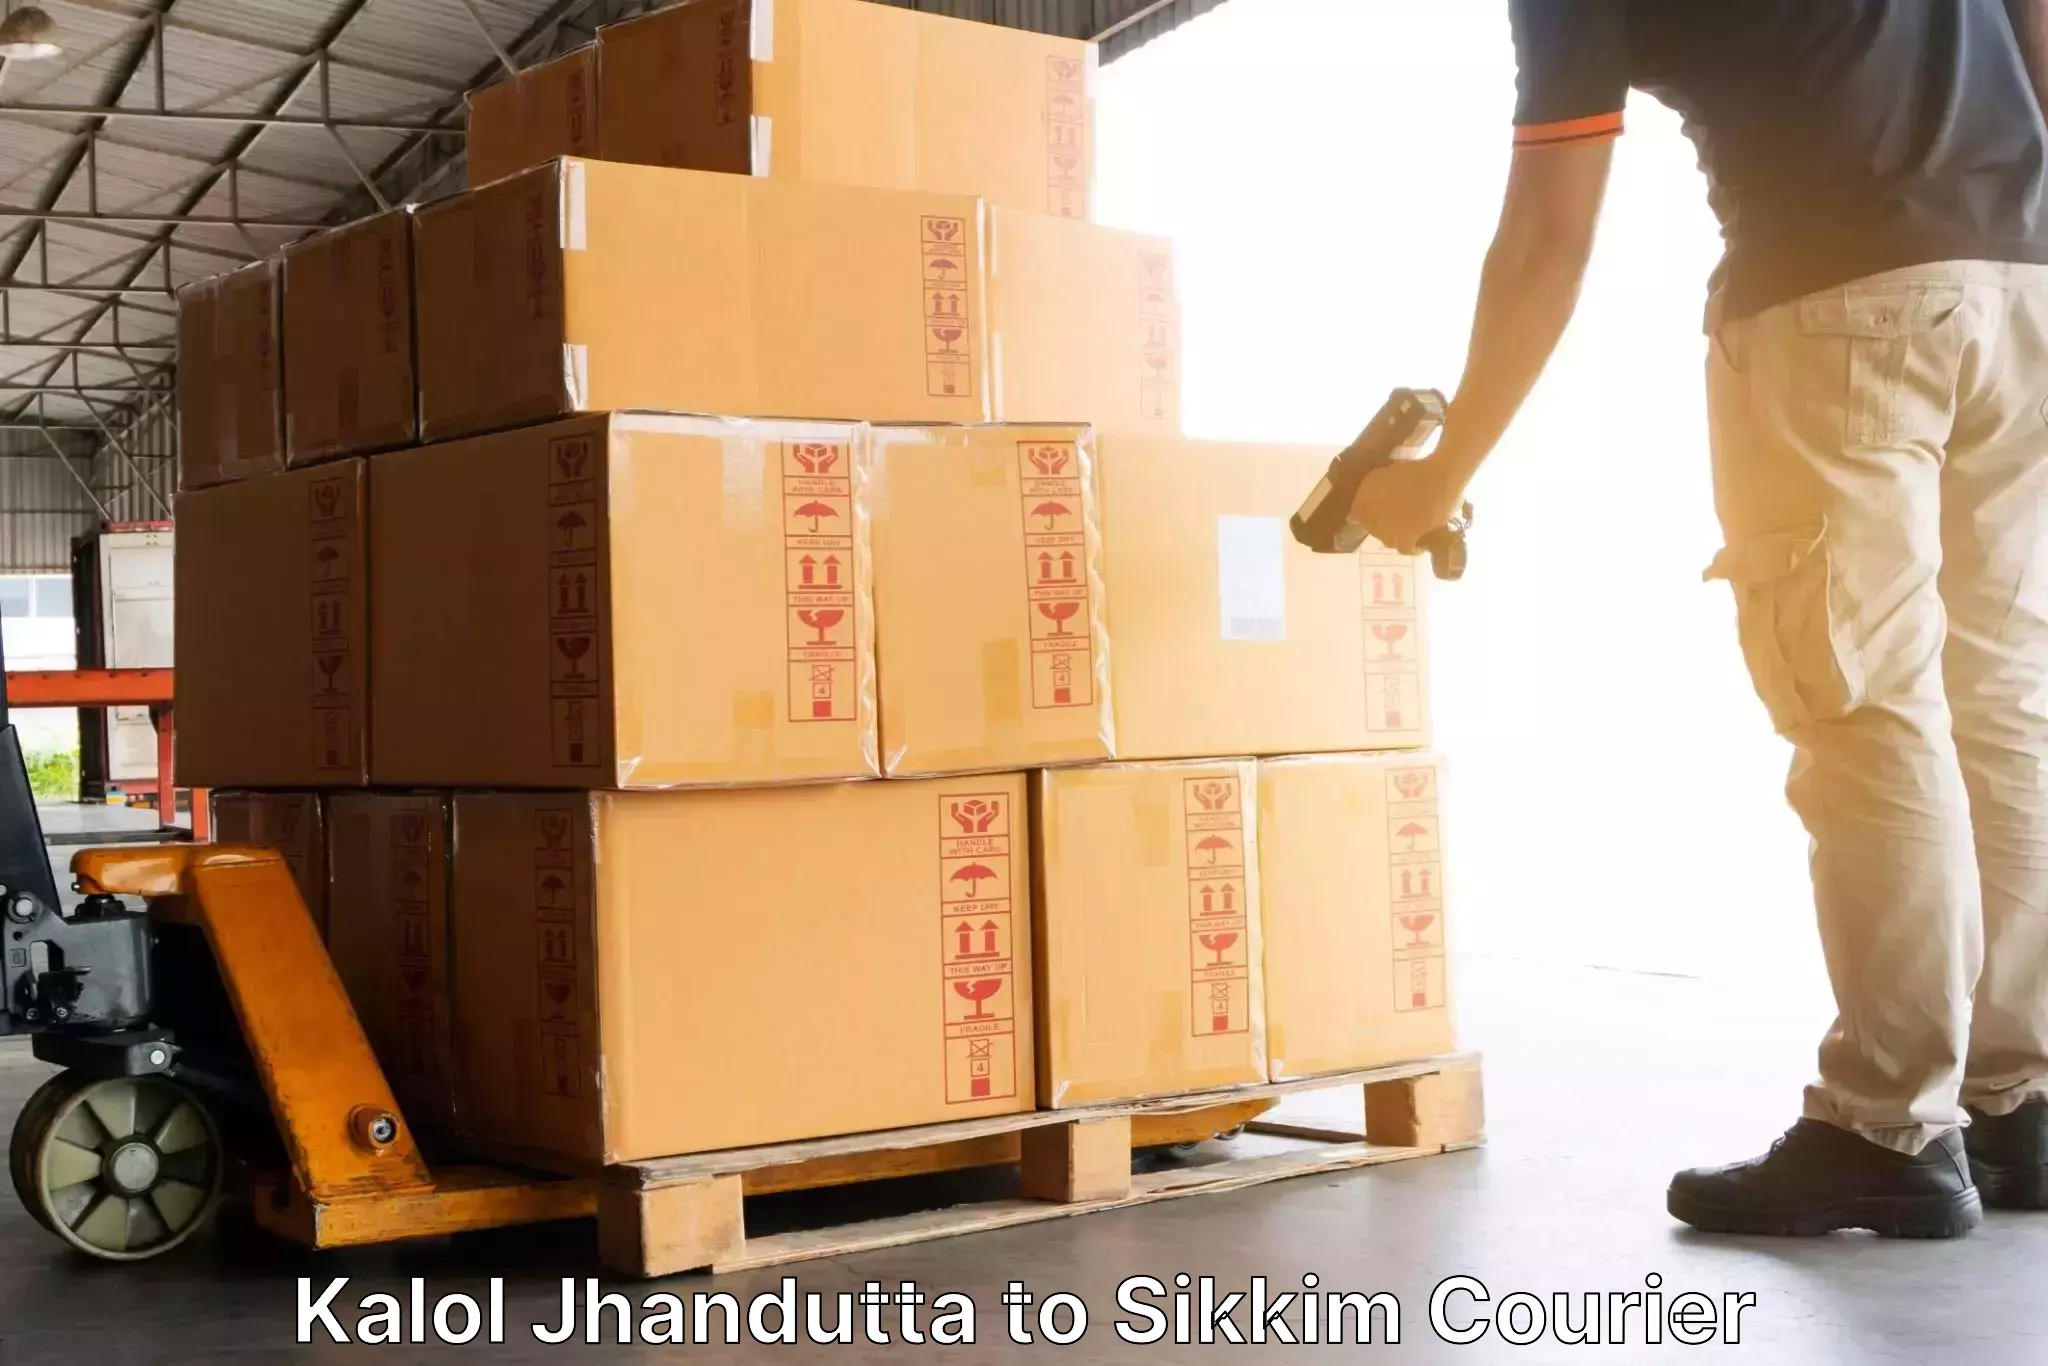 Efficient order fulfillment Kalol Jhandutta to Ranipool